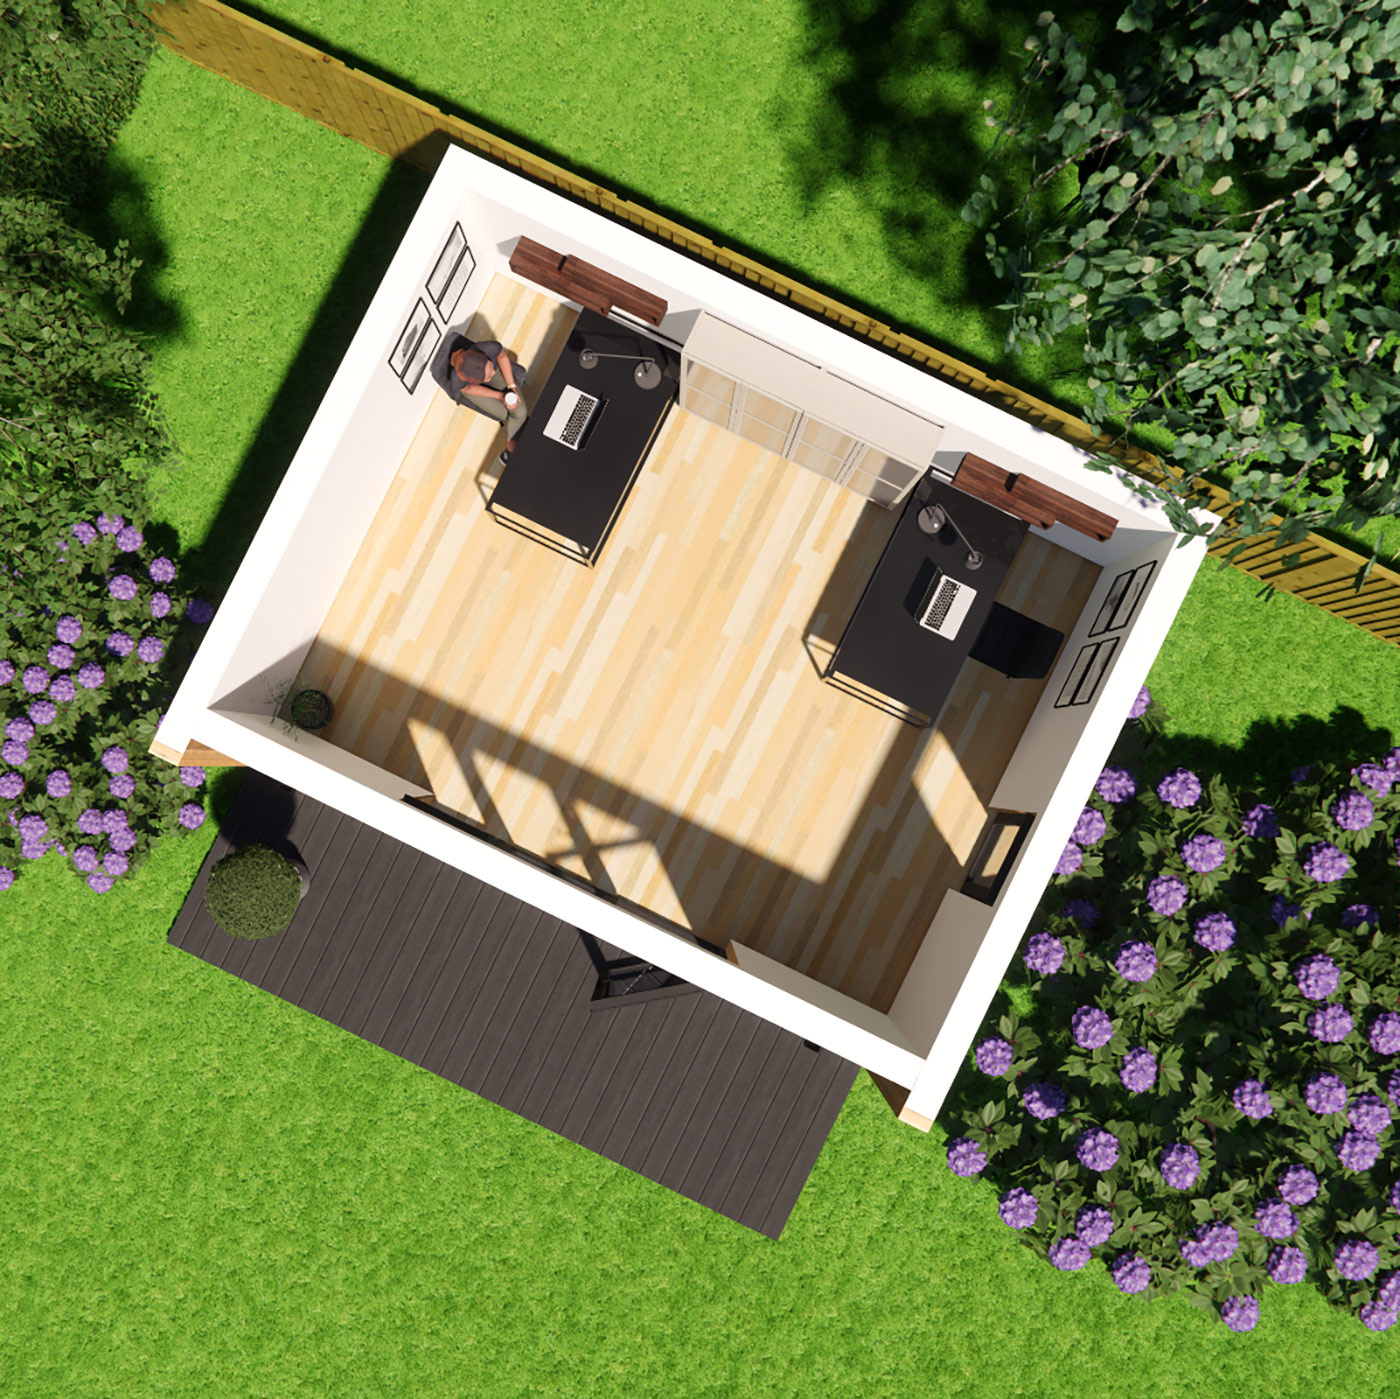 Floorplan visualisation of 3.9m by 5.0m garden office